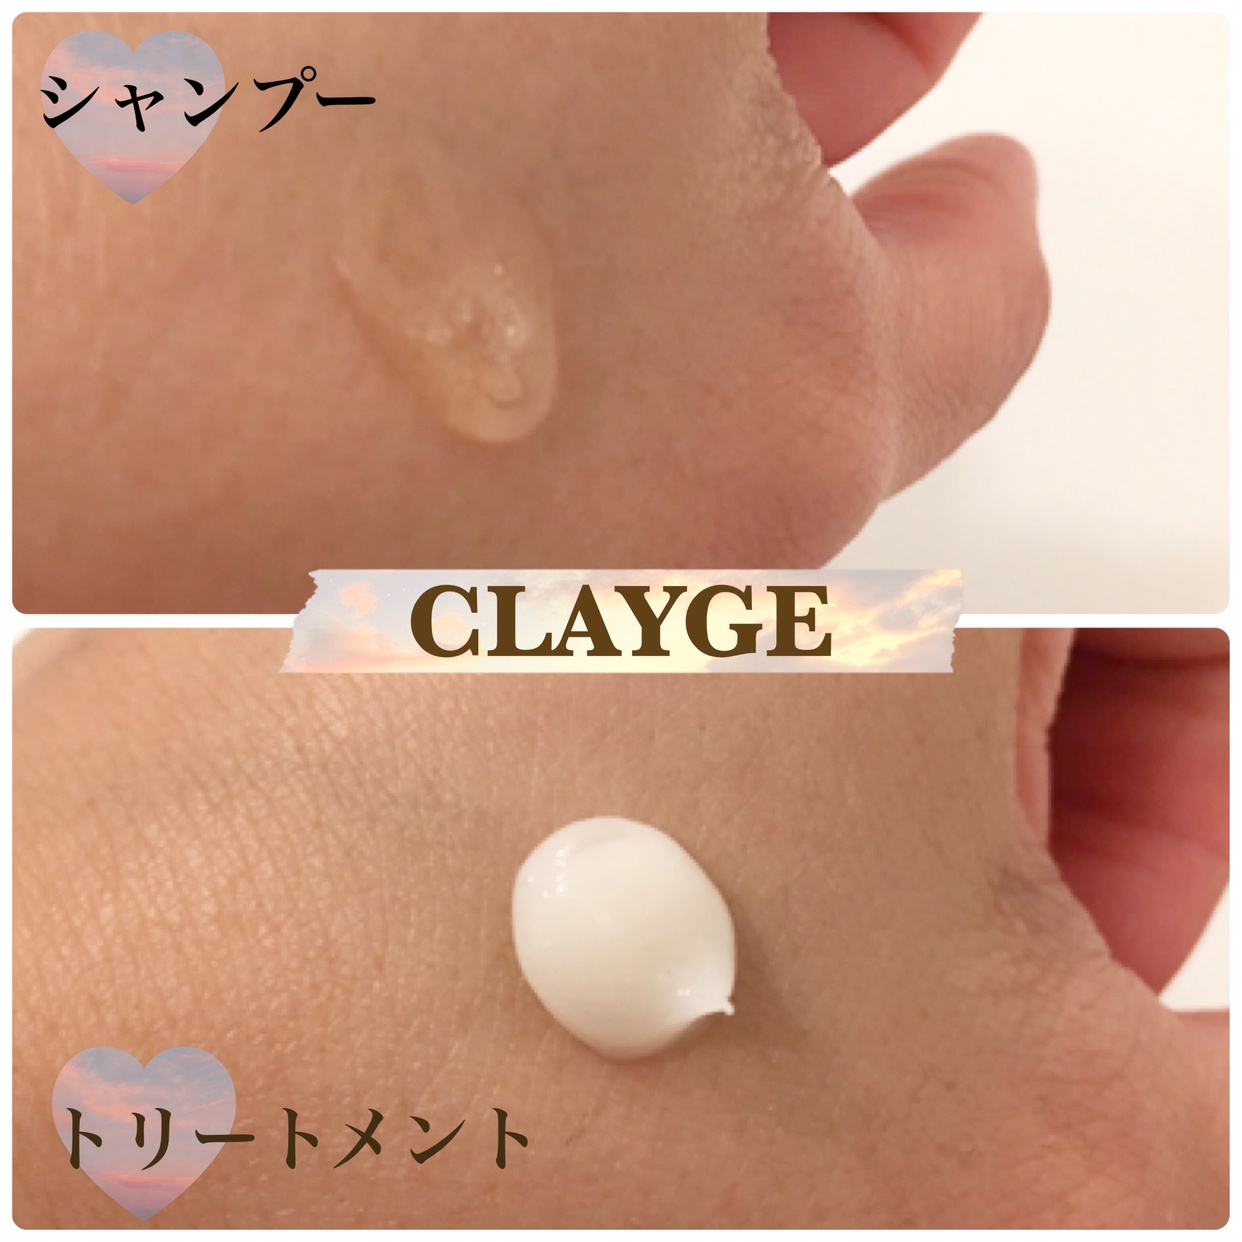 CLAYGE(クレージュ) シャンプー SNの良い点・メリットに関する有姫さんの口コミ画像2